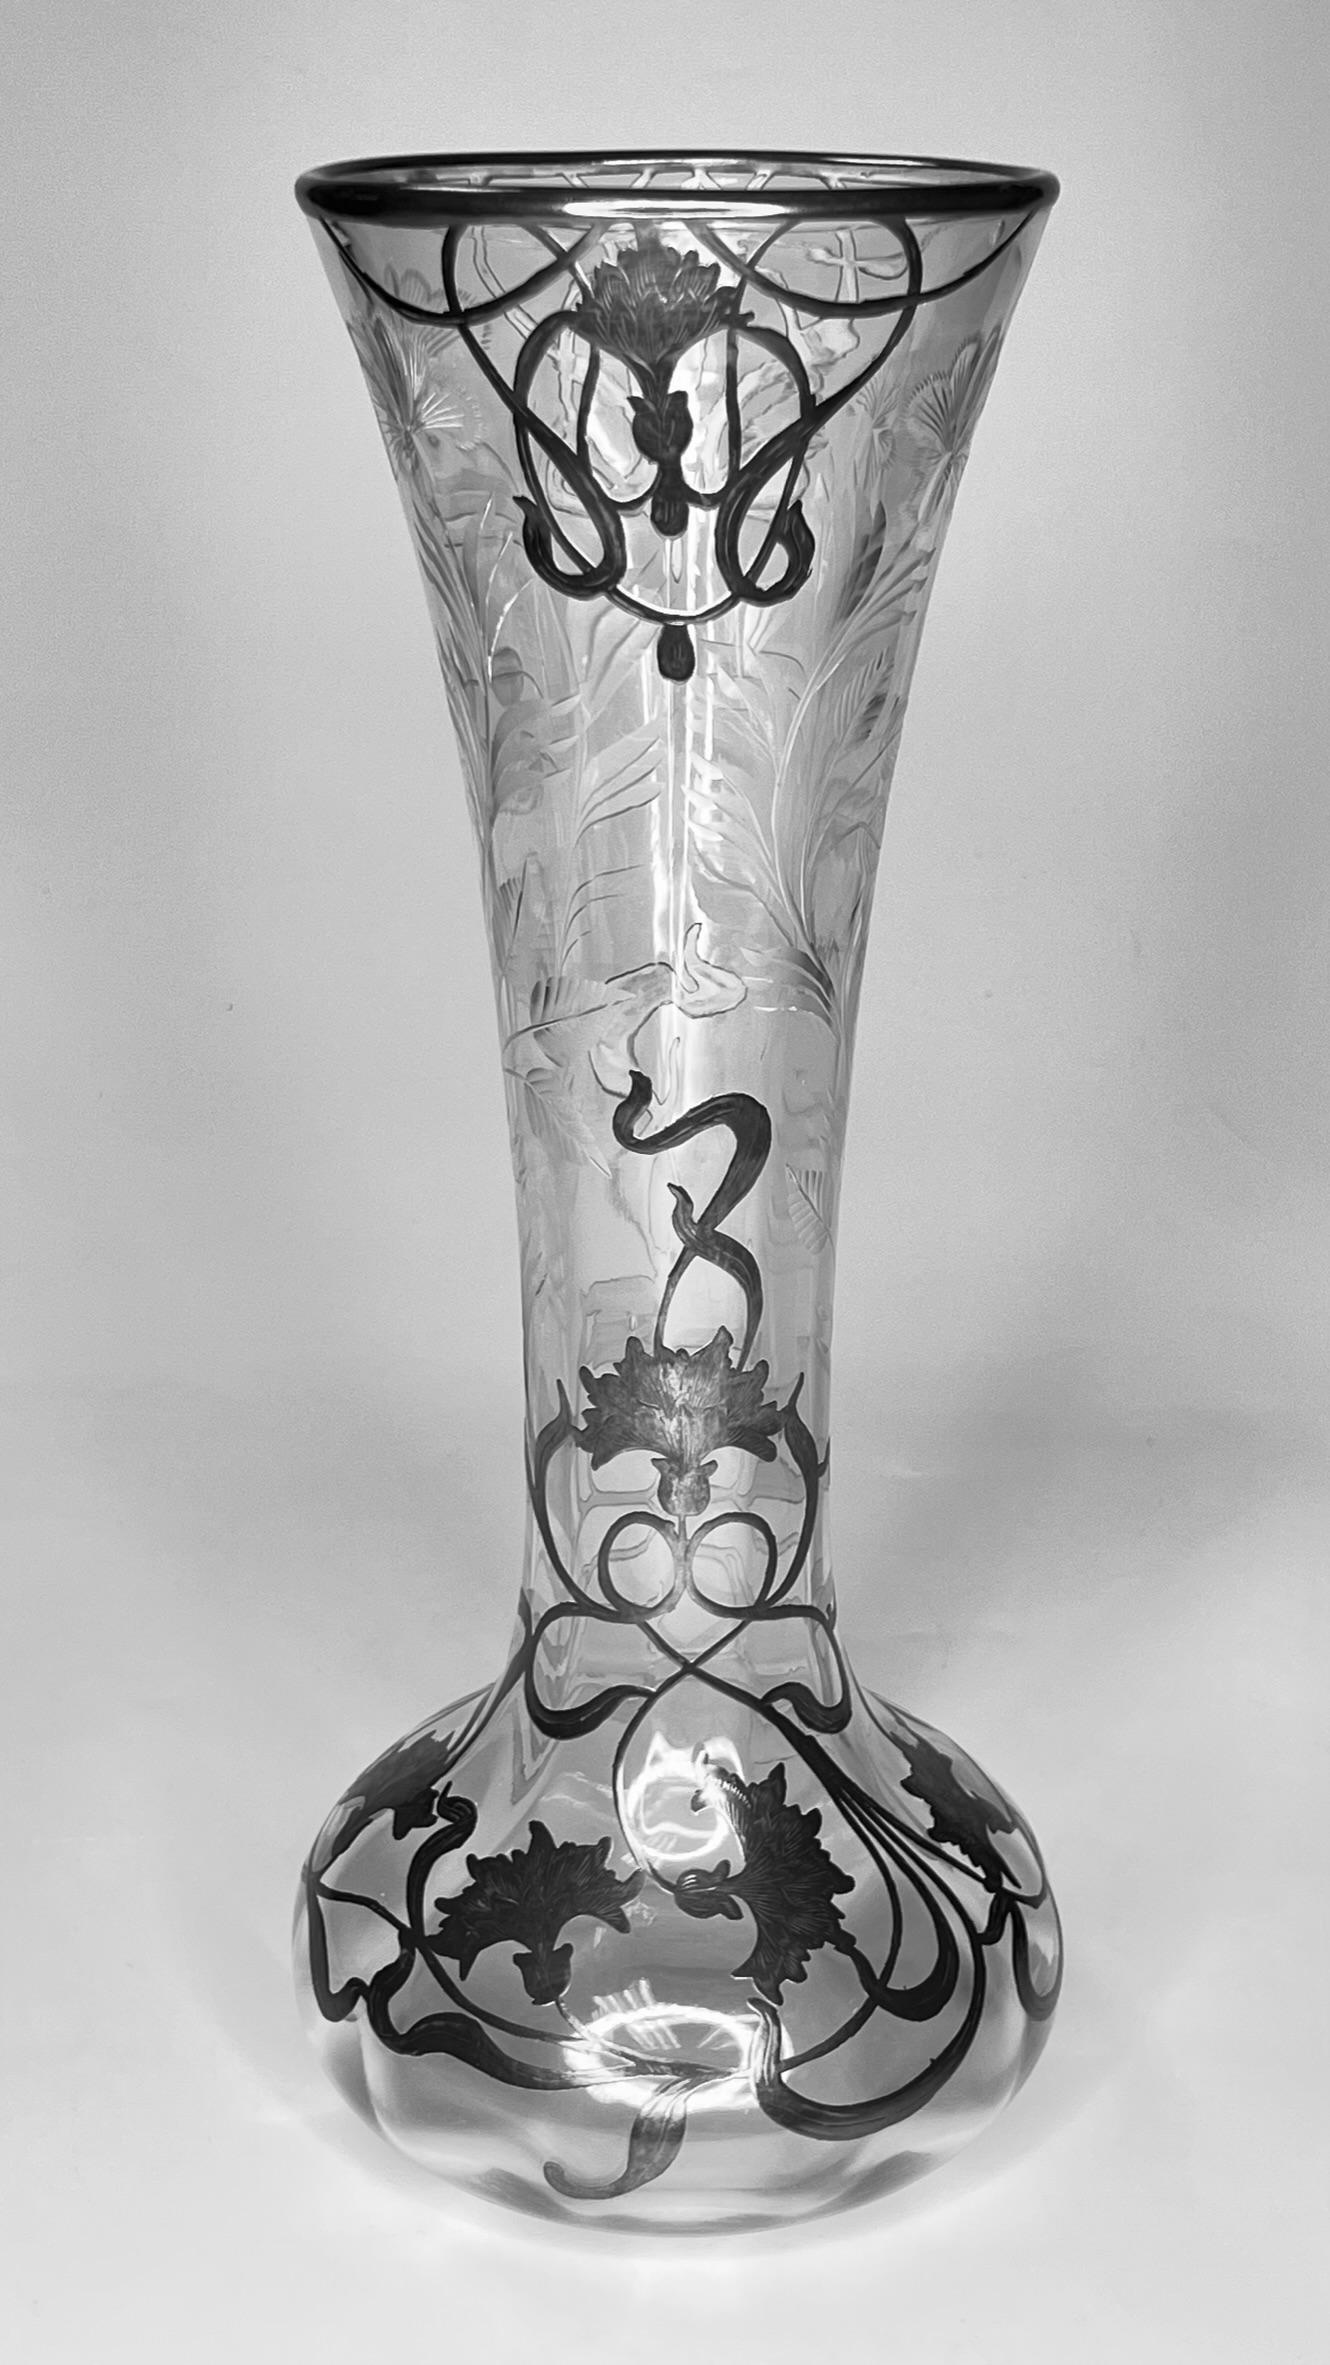 Joli vase en verre d'époque Art Nouveau avec un revêtement en argent représentant un feuillage.  Apparemment non signé.  En très bon état.